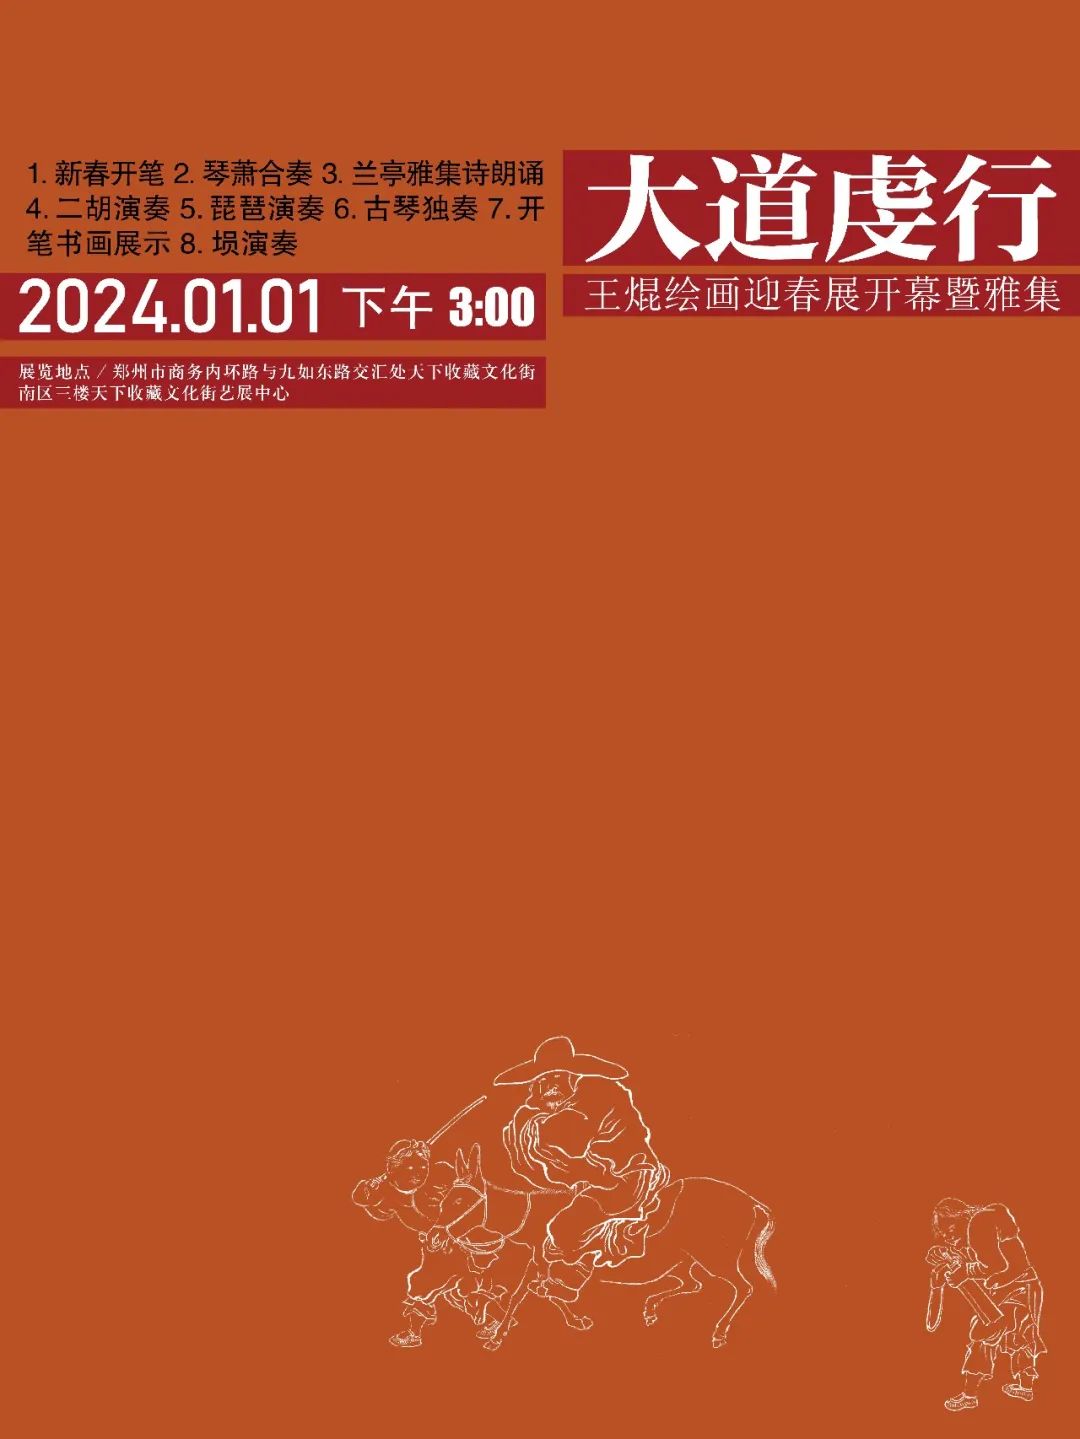 藏·展览丨大道虔行——王焜绘画迎春展(图3)